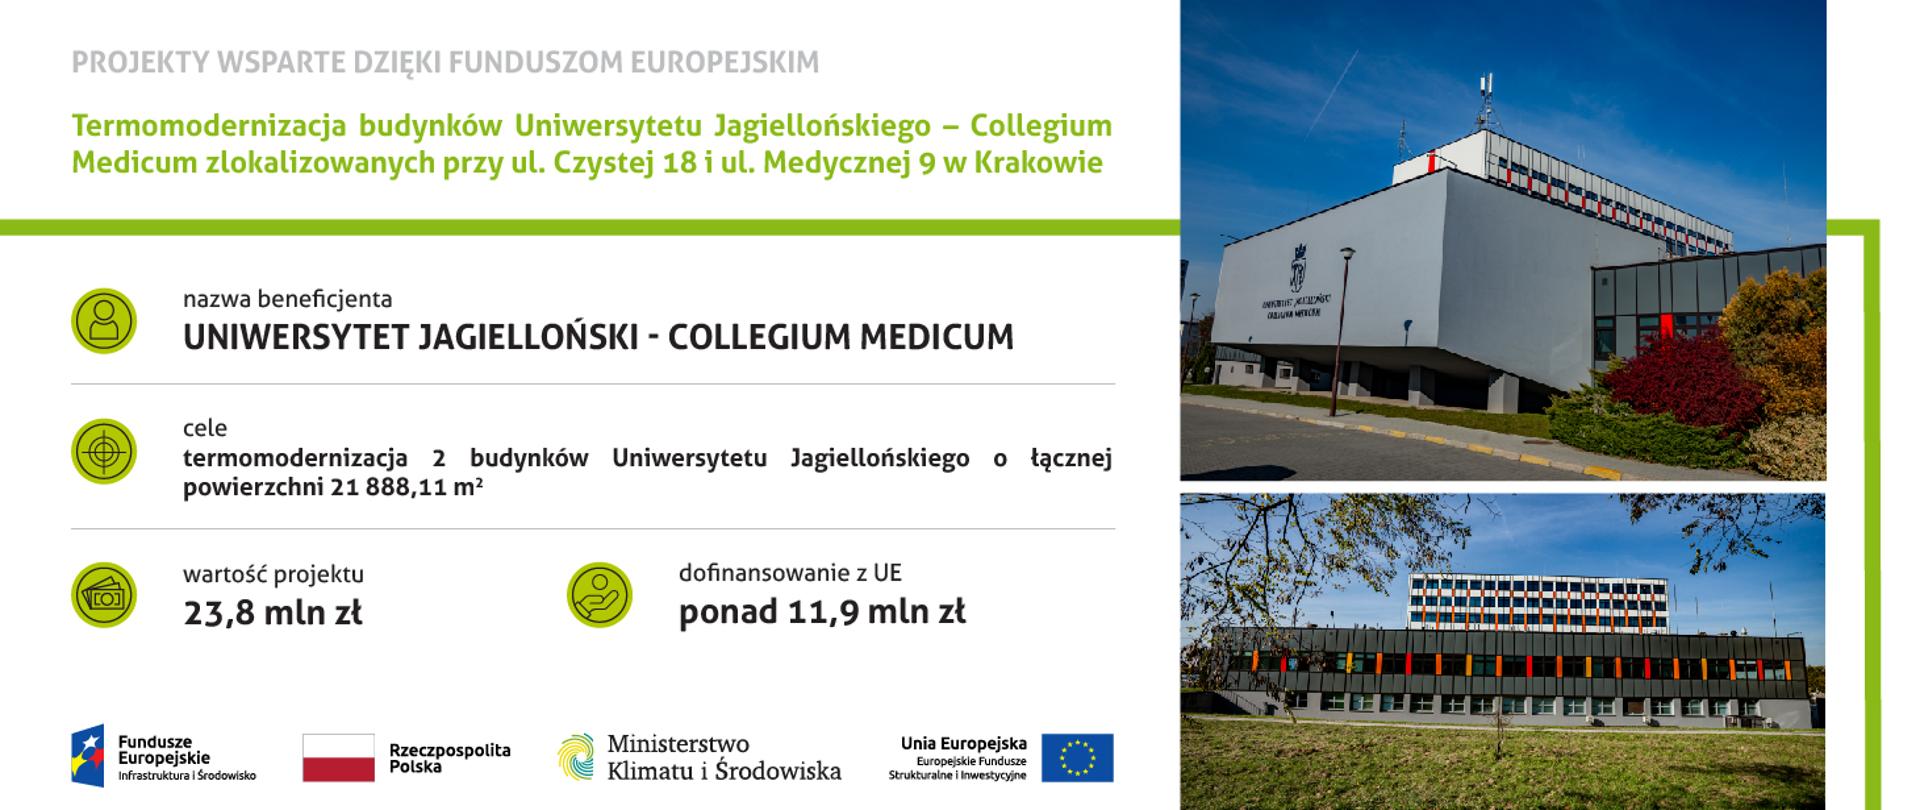 Termomodernizacja budynków Uniwersytetu Jagiellońskiego – Collegium Medicum